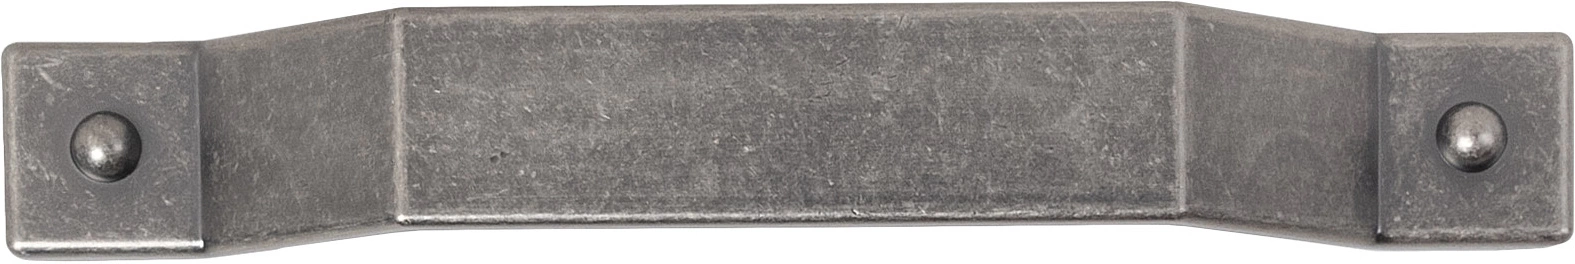 Ручка меб. скоба мет. TESORO 160 античное олово, AKS - фото 3